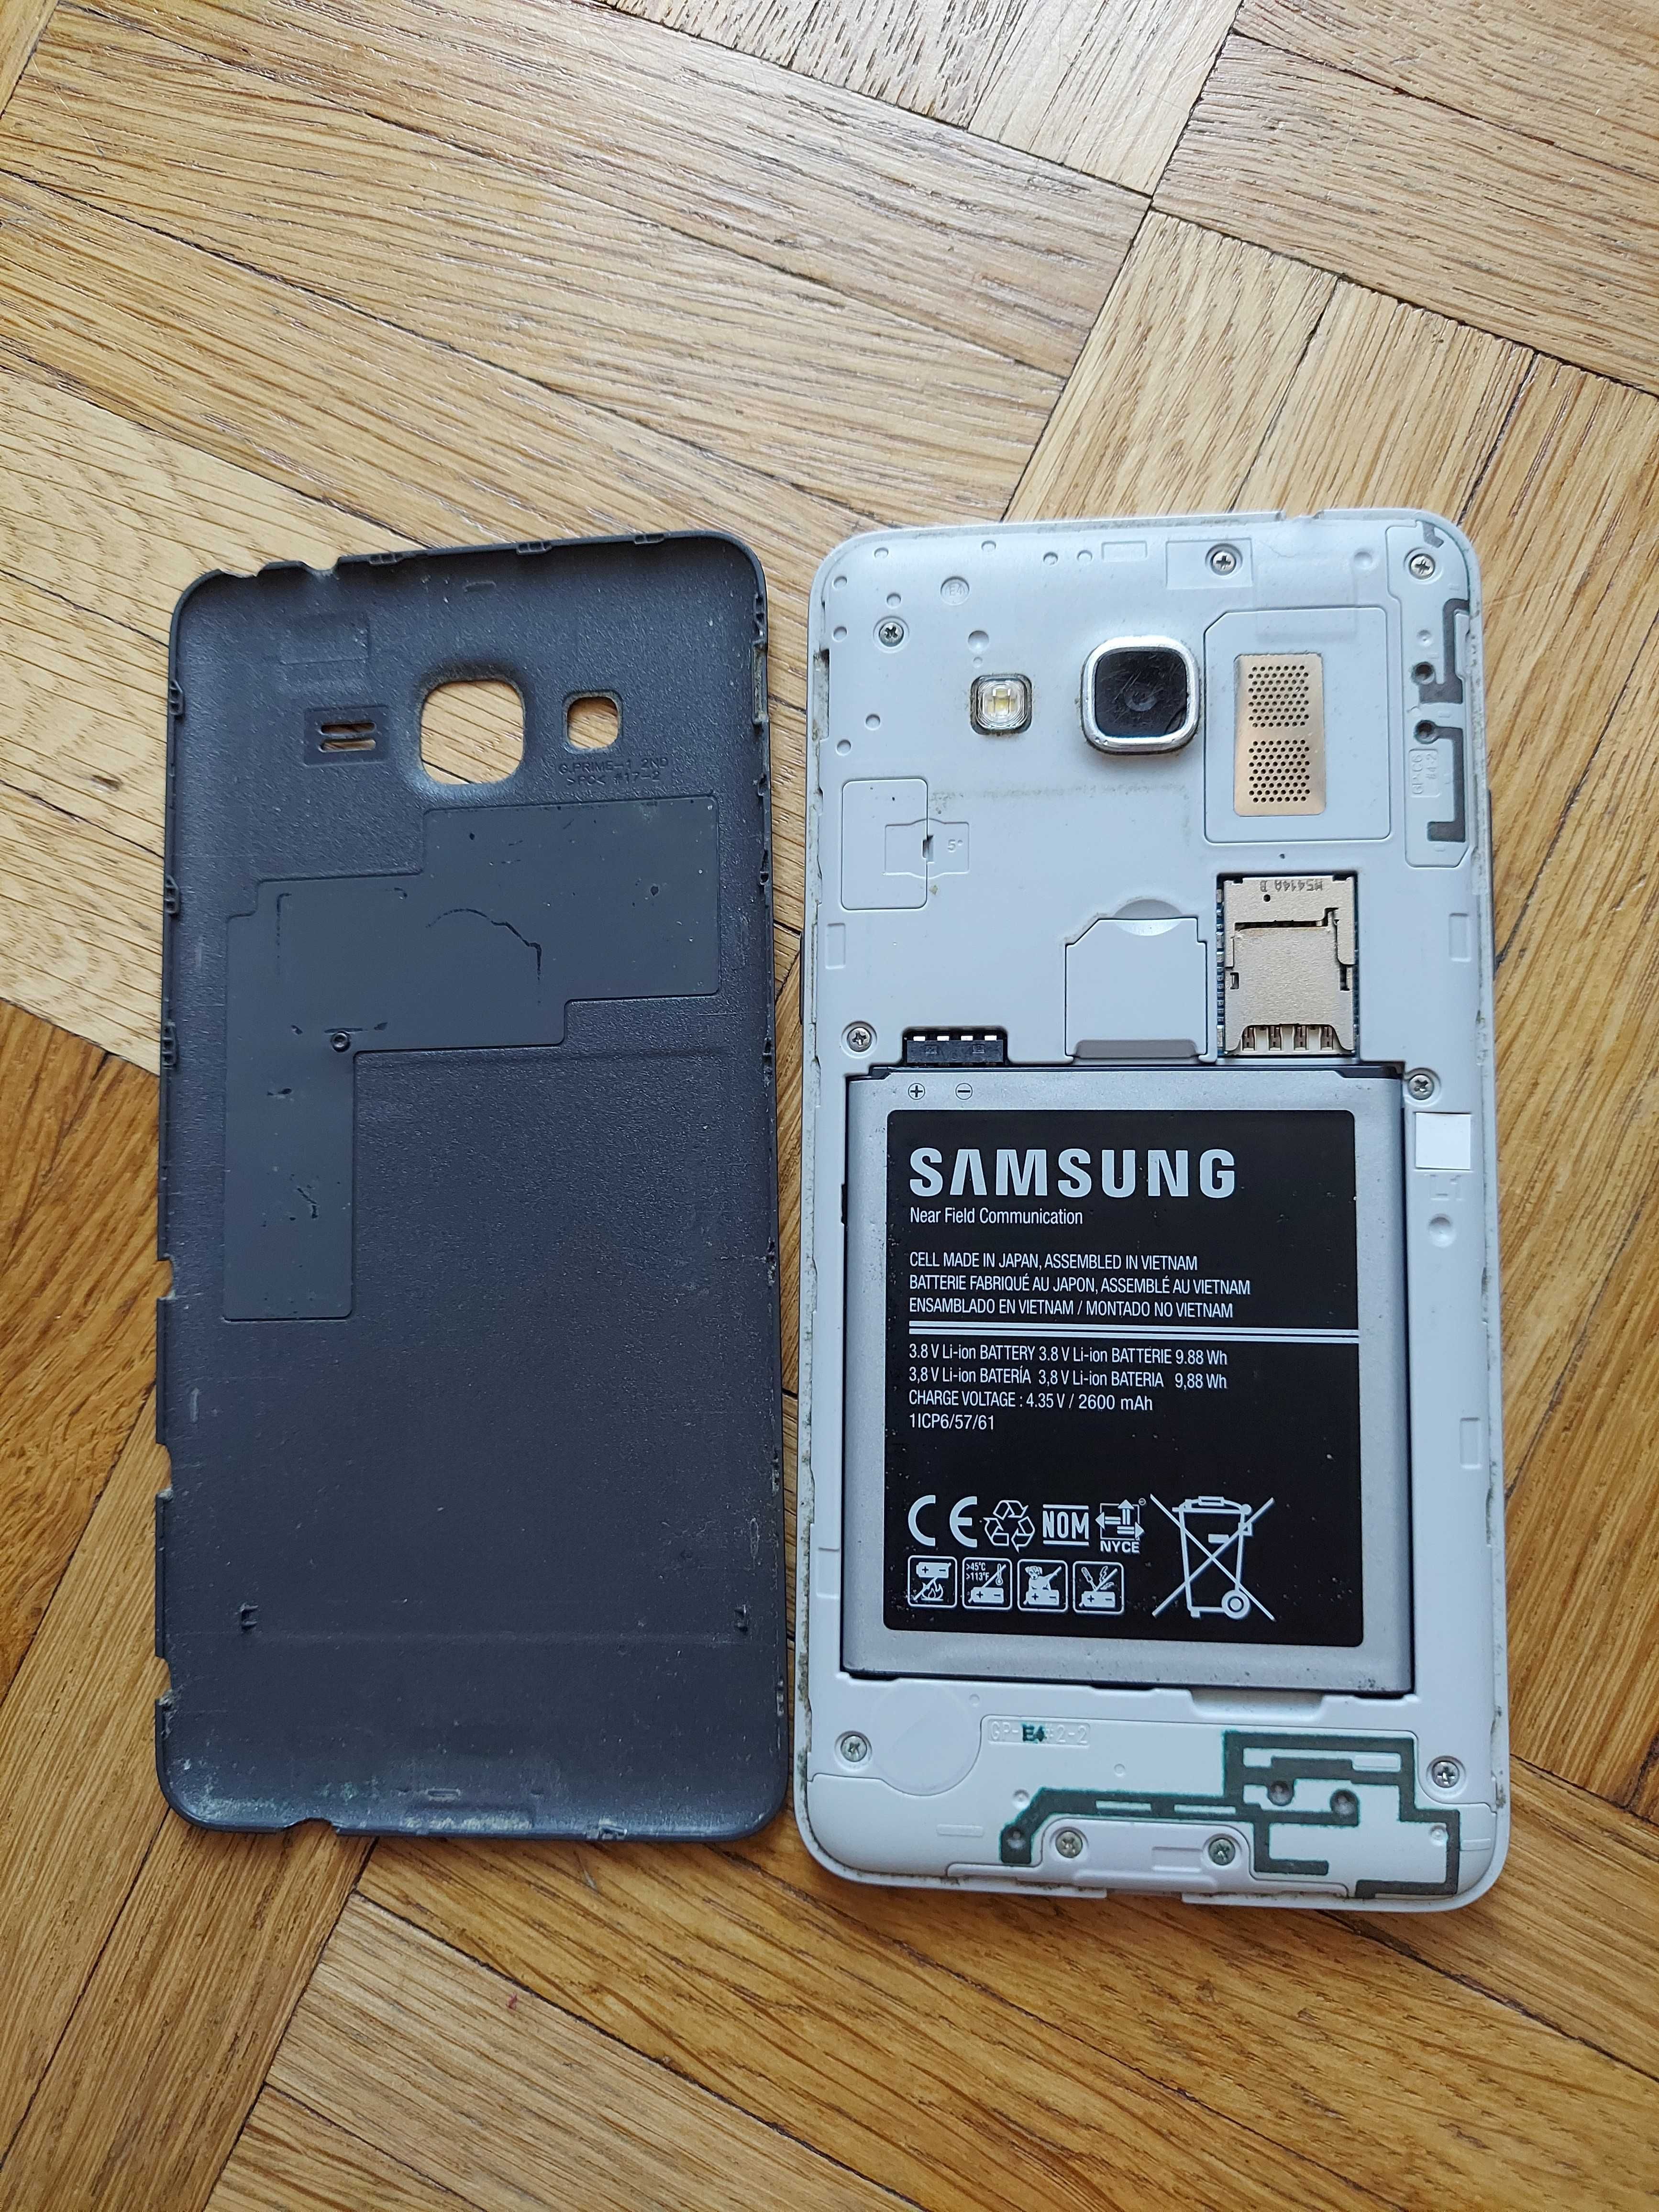 Samsung sm-g530fz bez simlocka